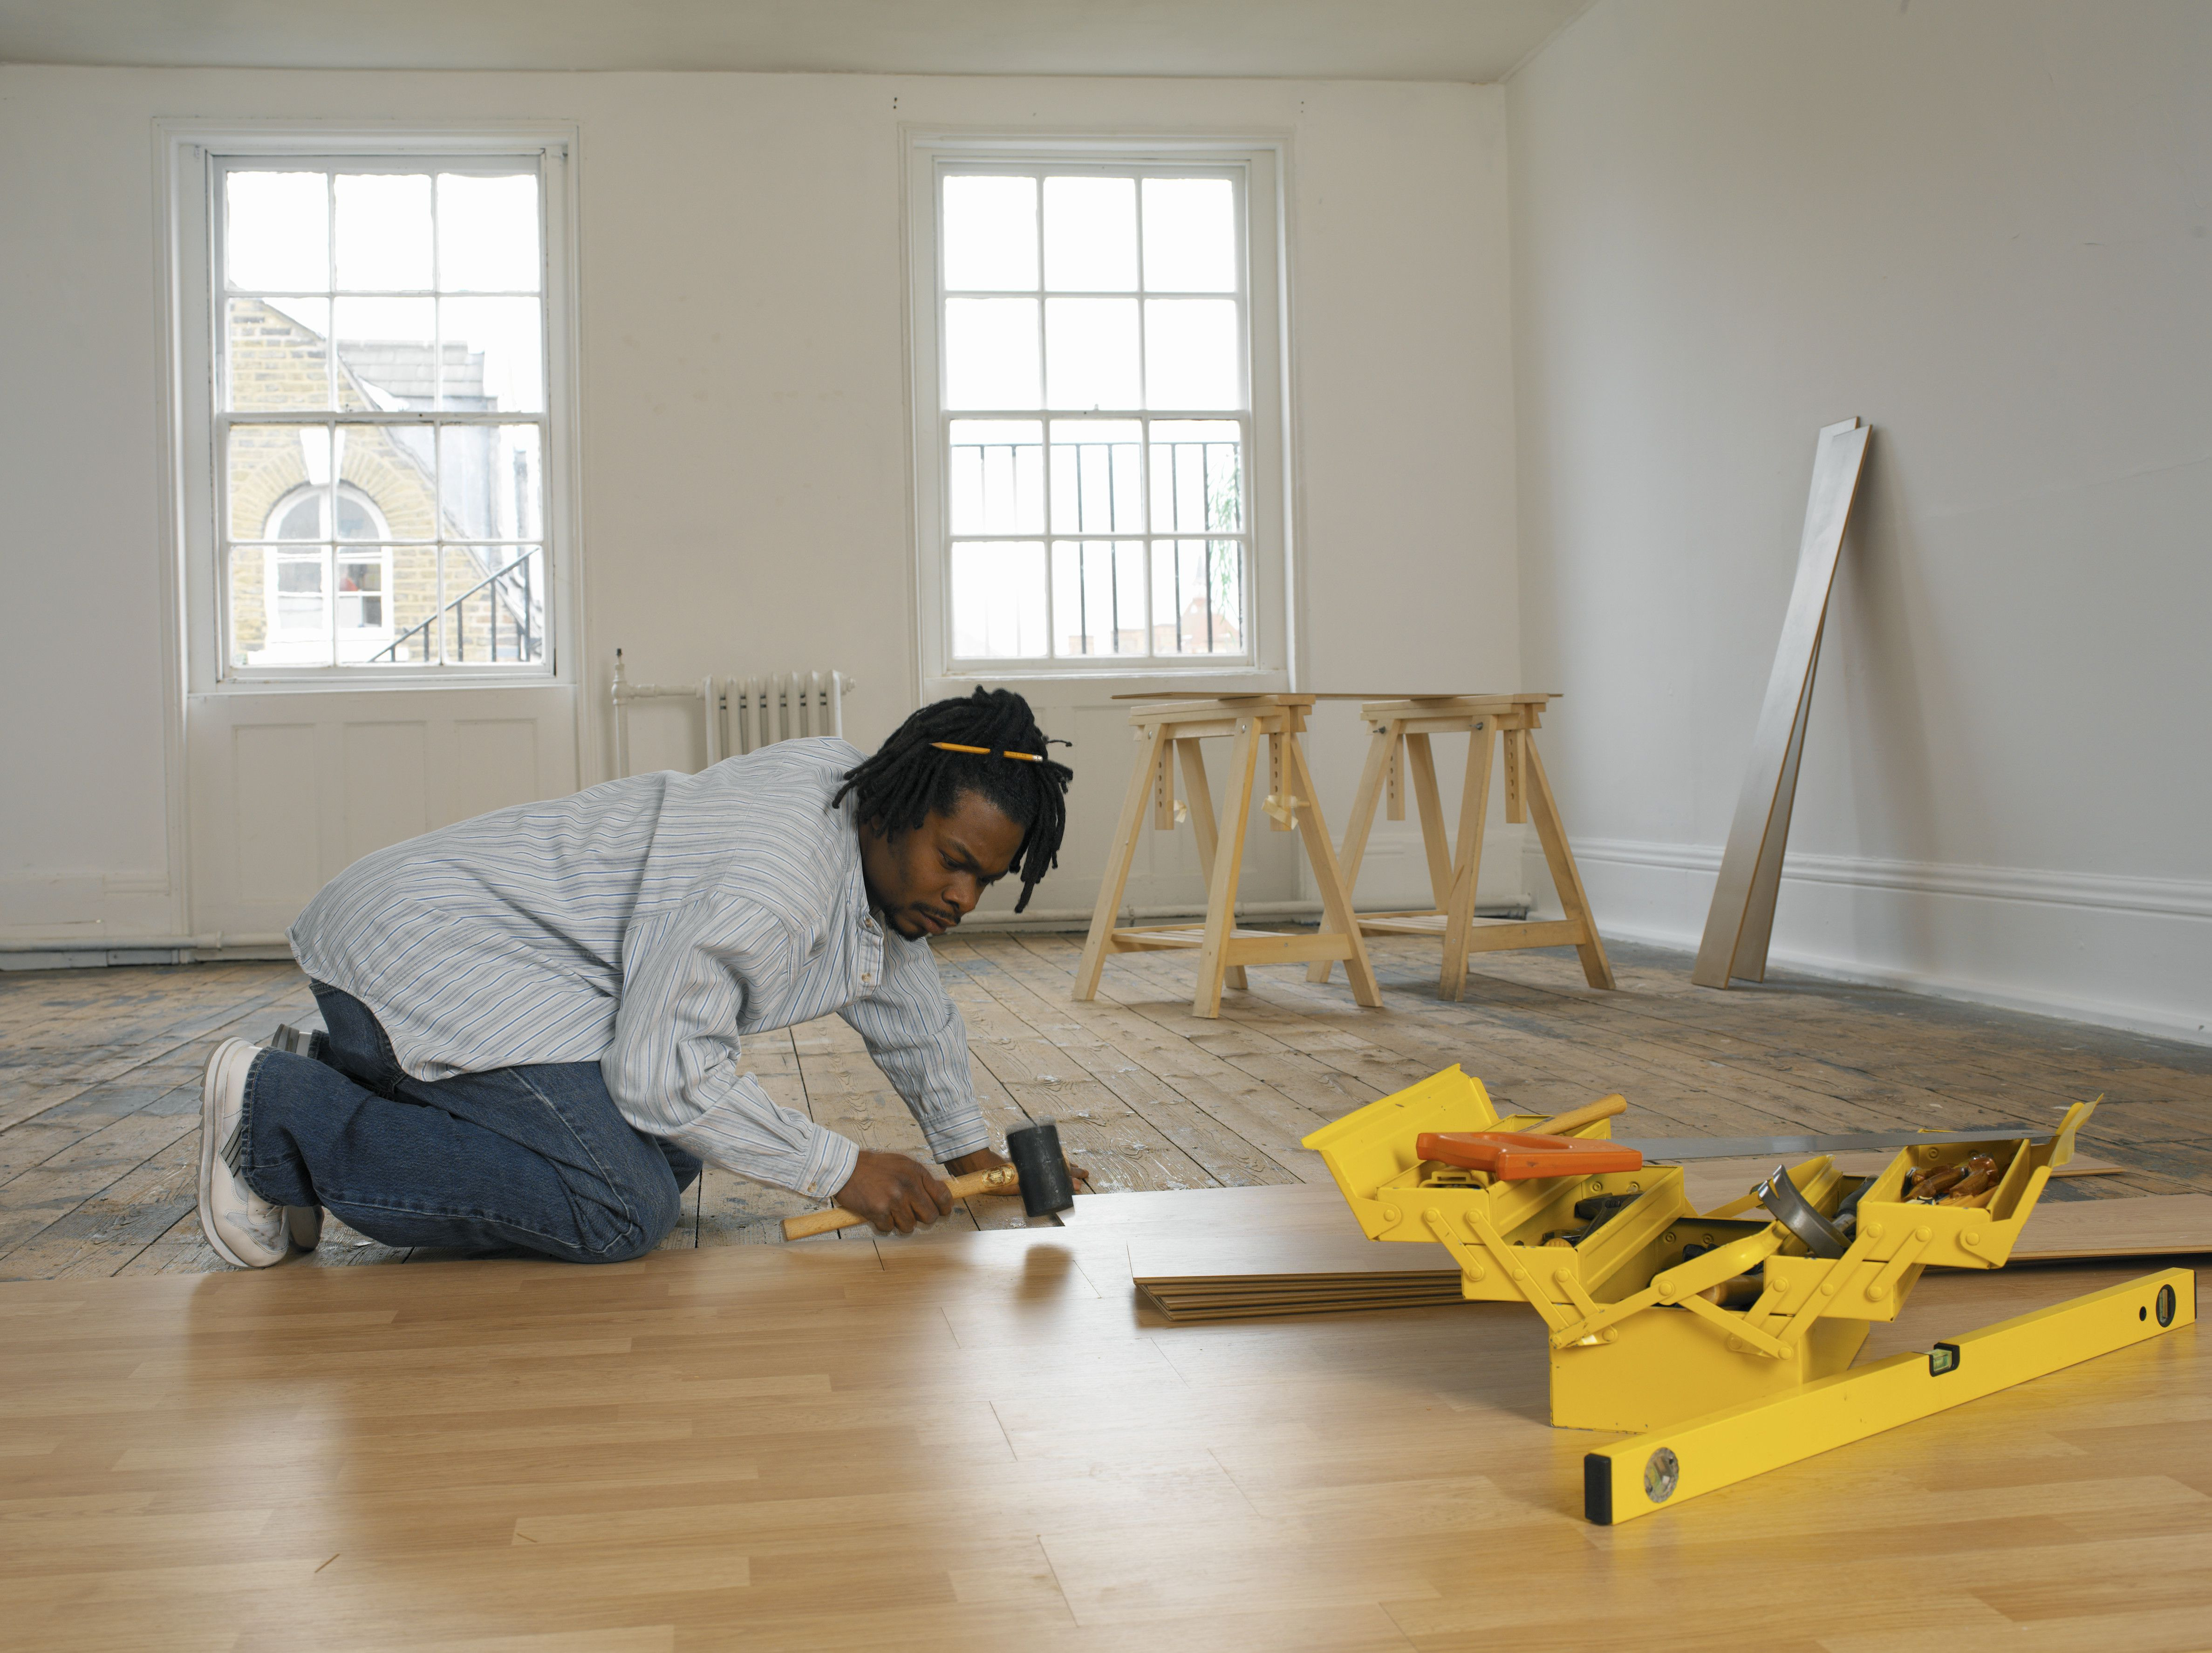 16 Great Hardwood Floor Repair Companies Unique Flooring Ideas